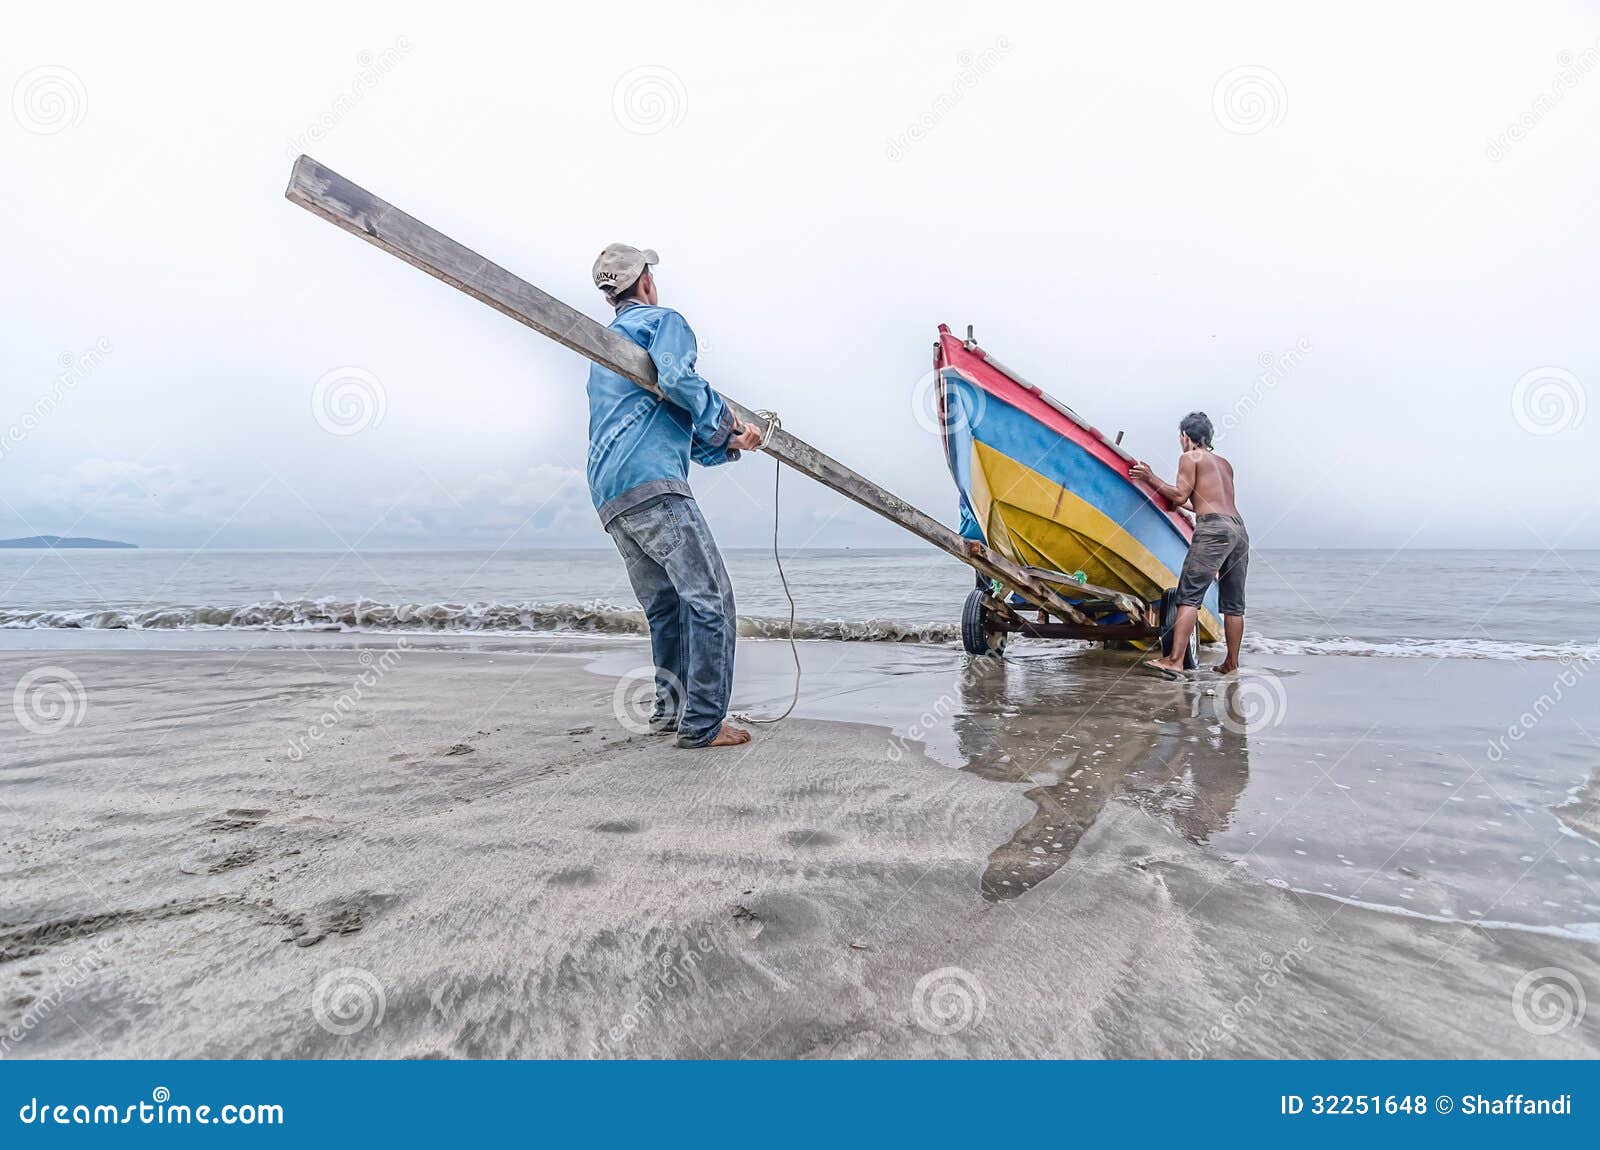 https://thumbs.dreamstime.com/z/two-fishermen-pull-boat-morning-32251648.jpg